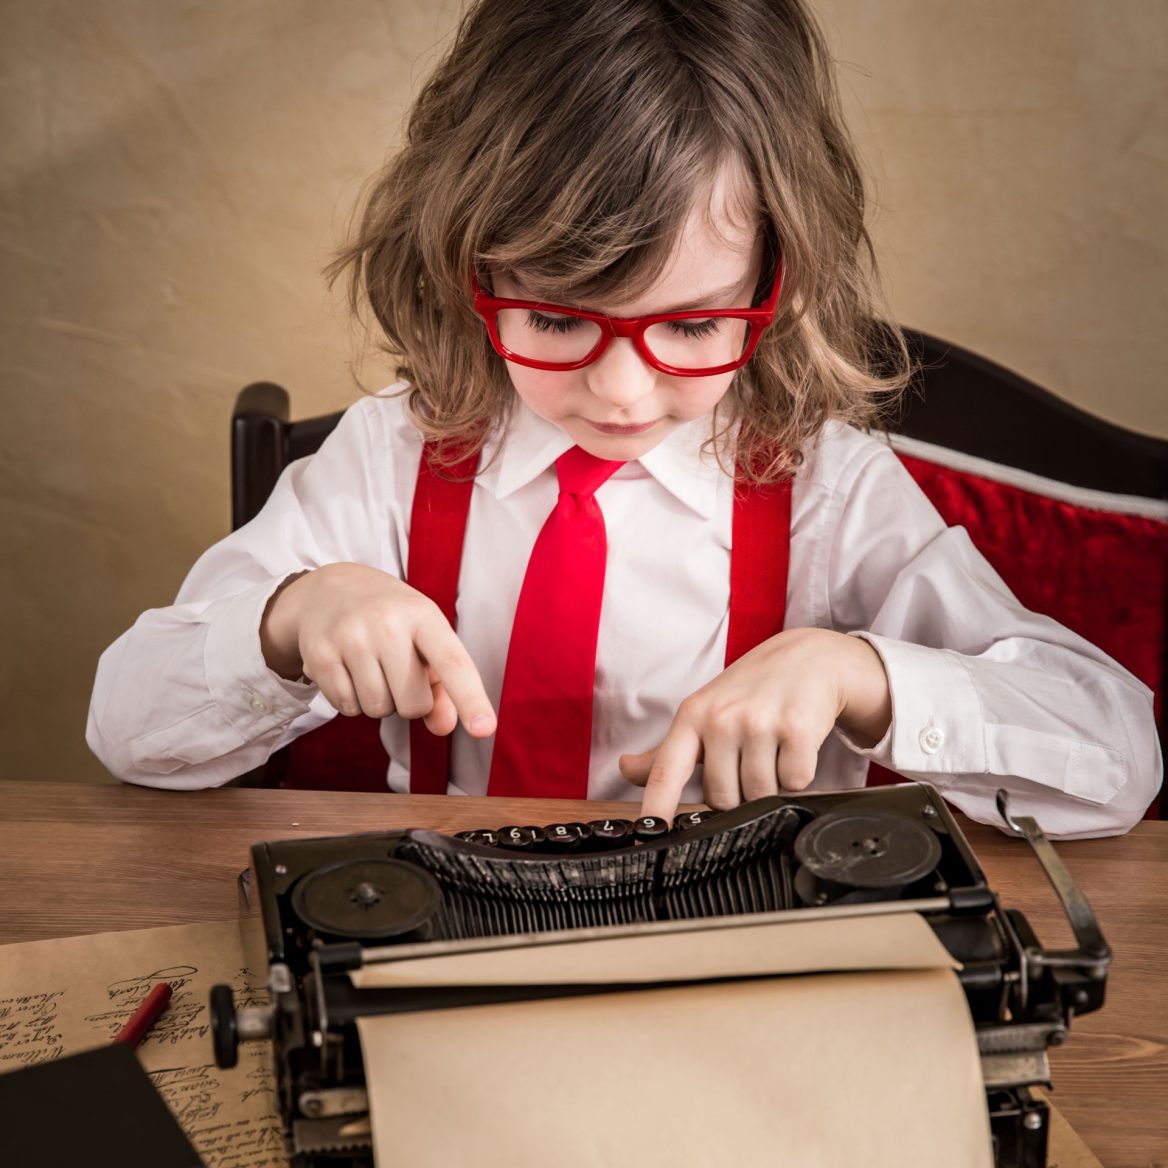 Child businessman typing on a typewriter